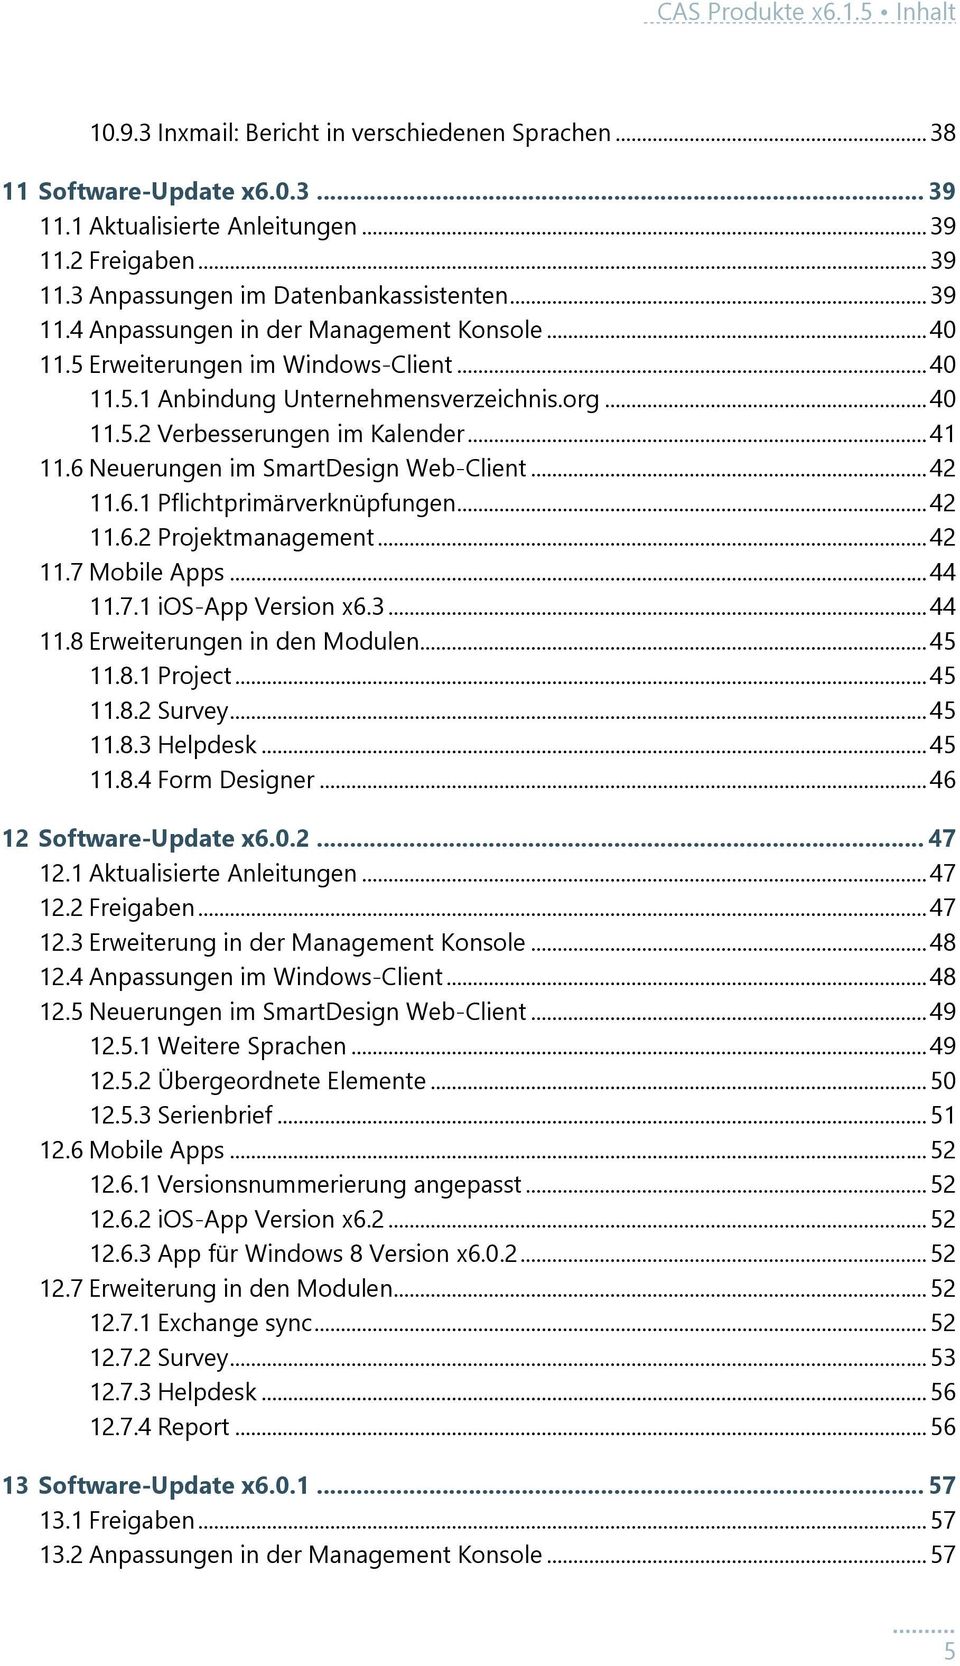 6 Neuerungen im SmartDesign Web-Client... 42 11.6.1 Pflichtprimärverknüpfungen... 42 11.6.2 Projektmanagement... 42 11.7 Mobile Apps... 44 11.7.1 ios-app Version x6.3... 44 11.8 Erweiterungen in den Modulen.